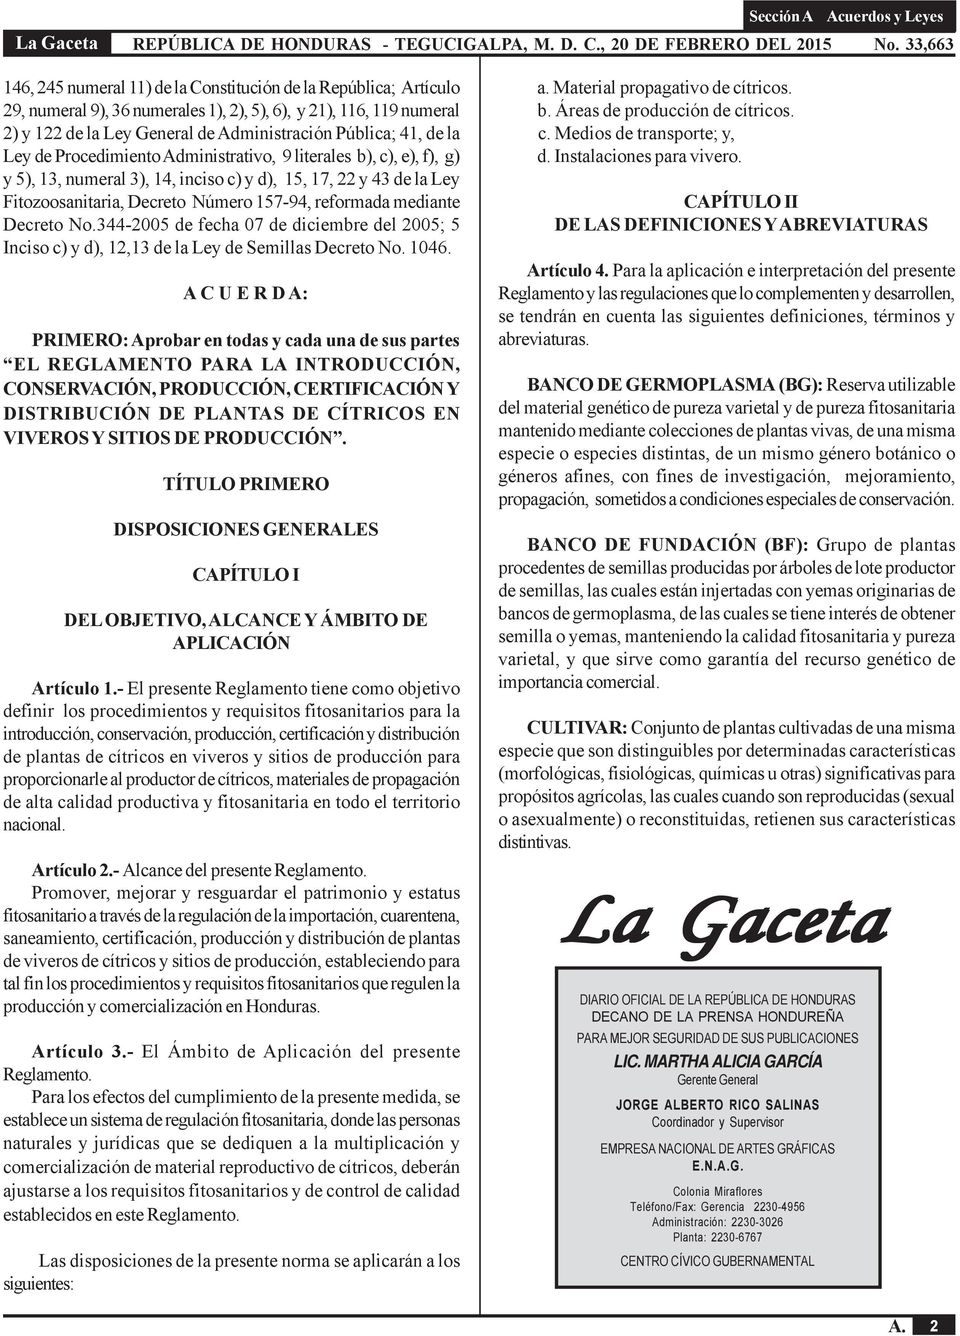 Decreto No.344-2005 de fecha 07 de diciembre del 2005; 5 Inciso c) y d), 12,13 de la Ley de Semillas Decreto No. 1046.